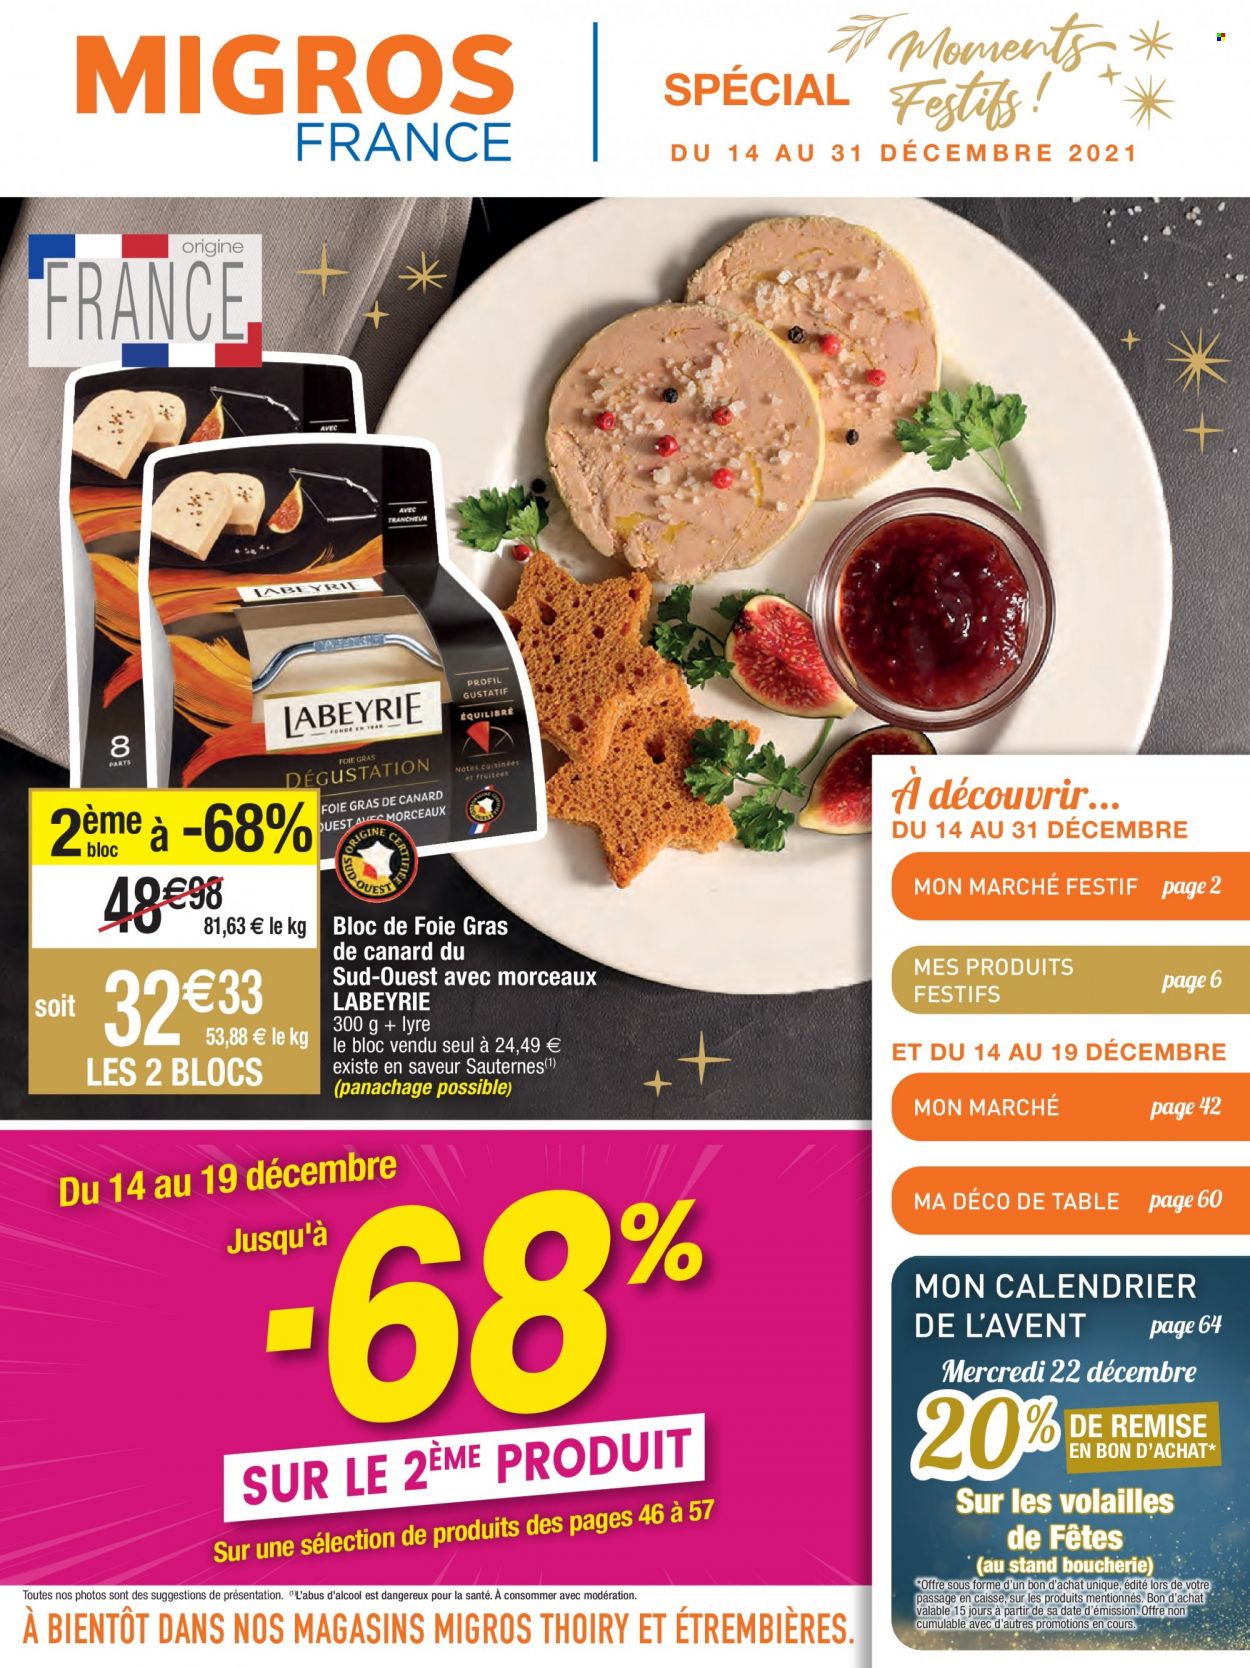 thumbnail - Catalogue Migros France - 14/12/2021 - 31/12/2021 - Produits soldés - Labeyrie, Sauternes, calendrier. Page 1.